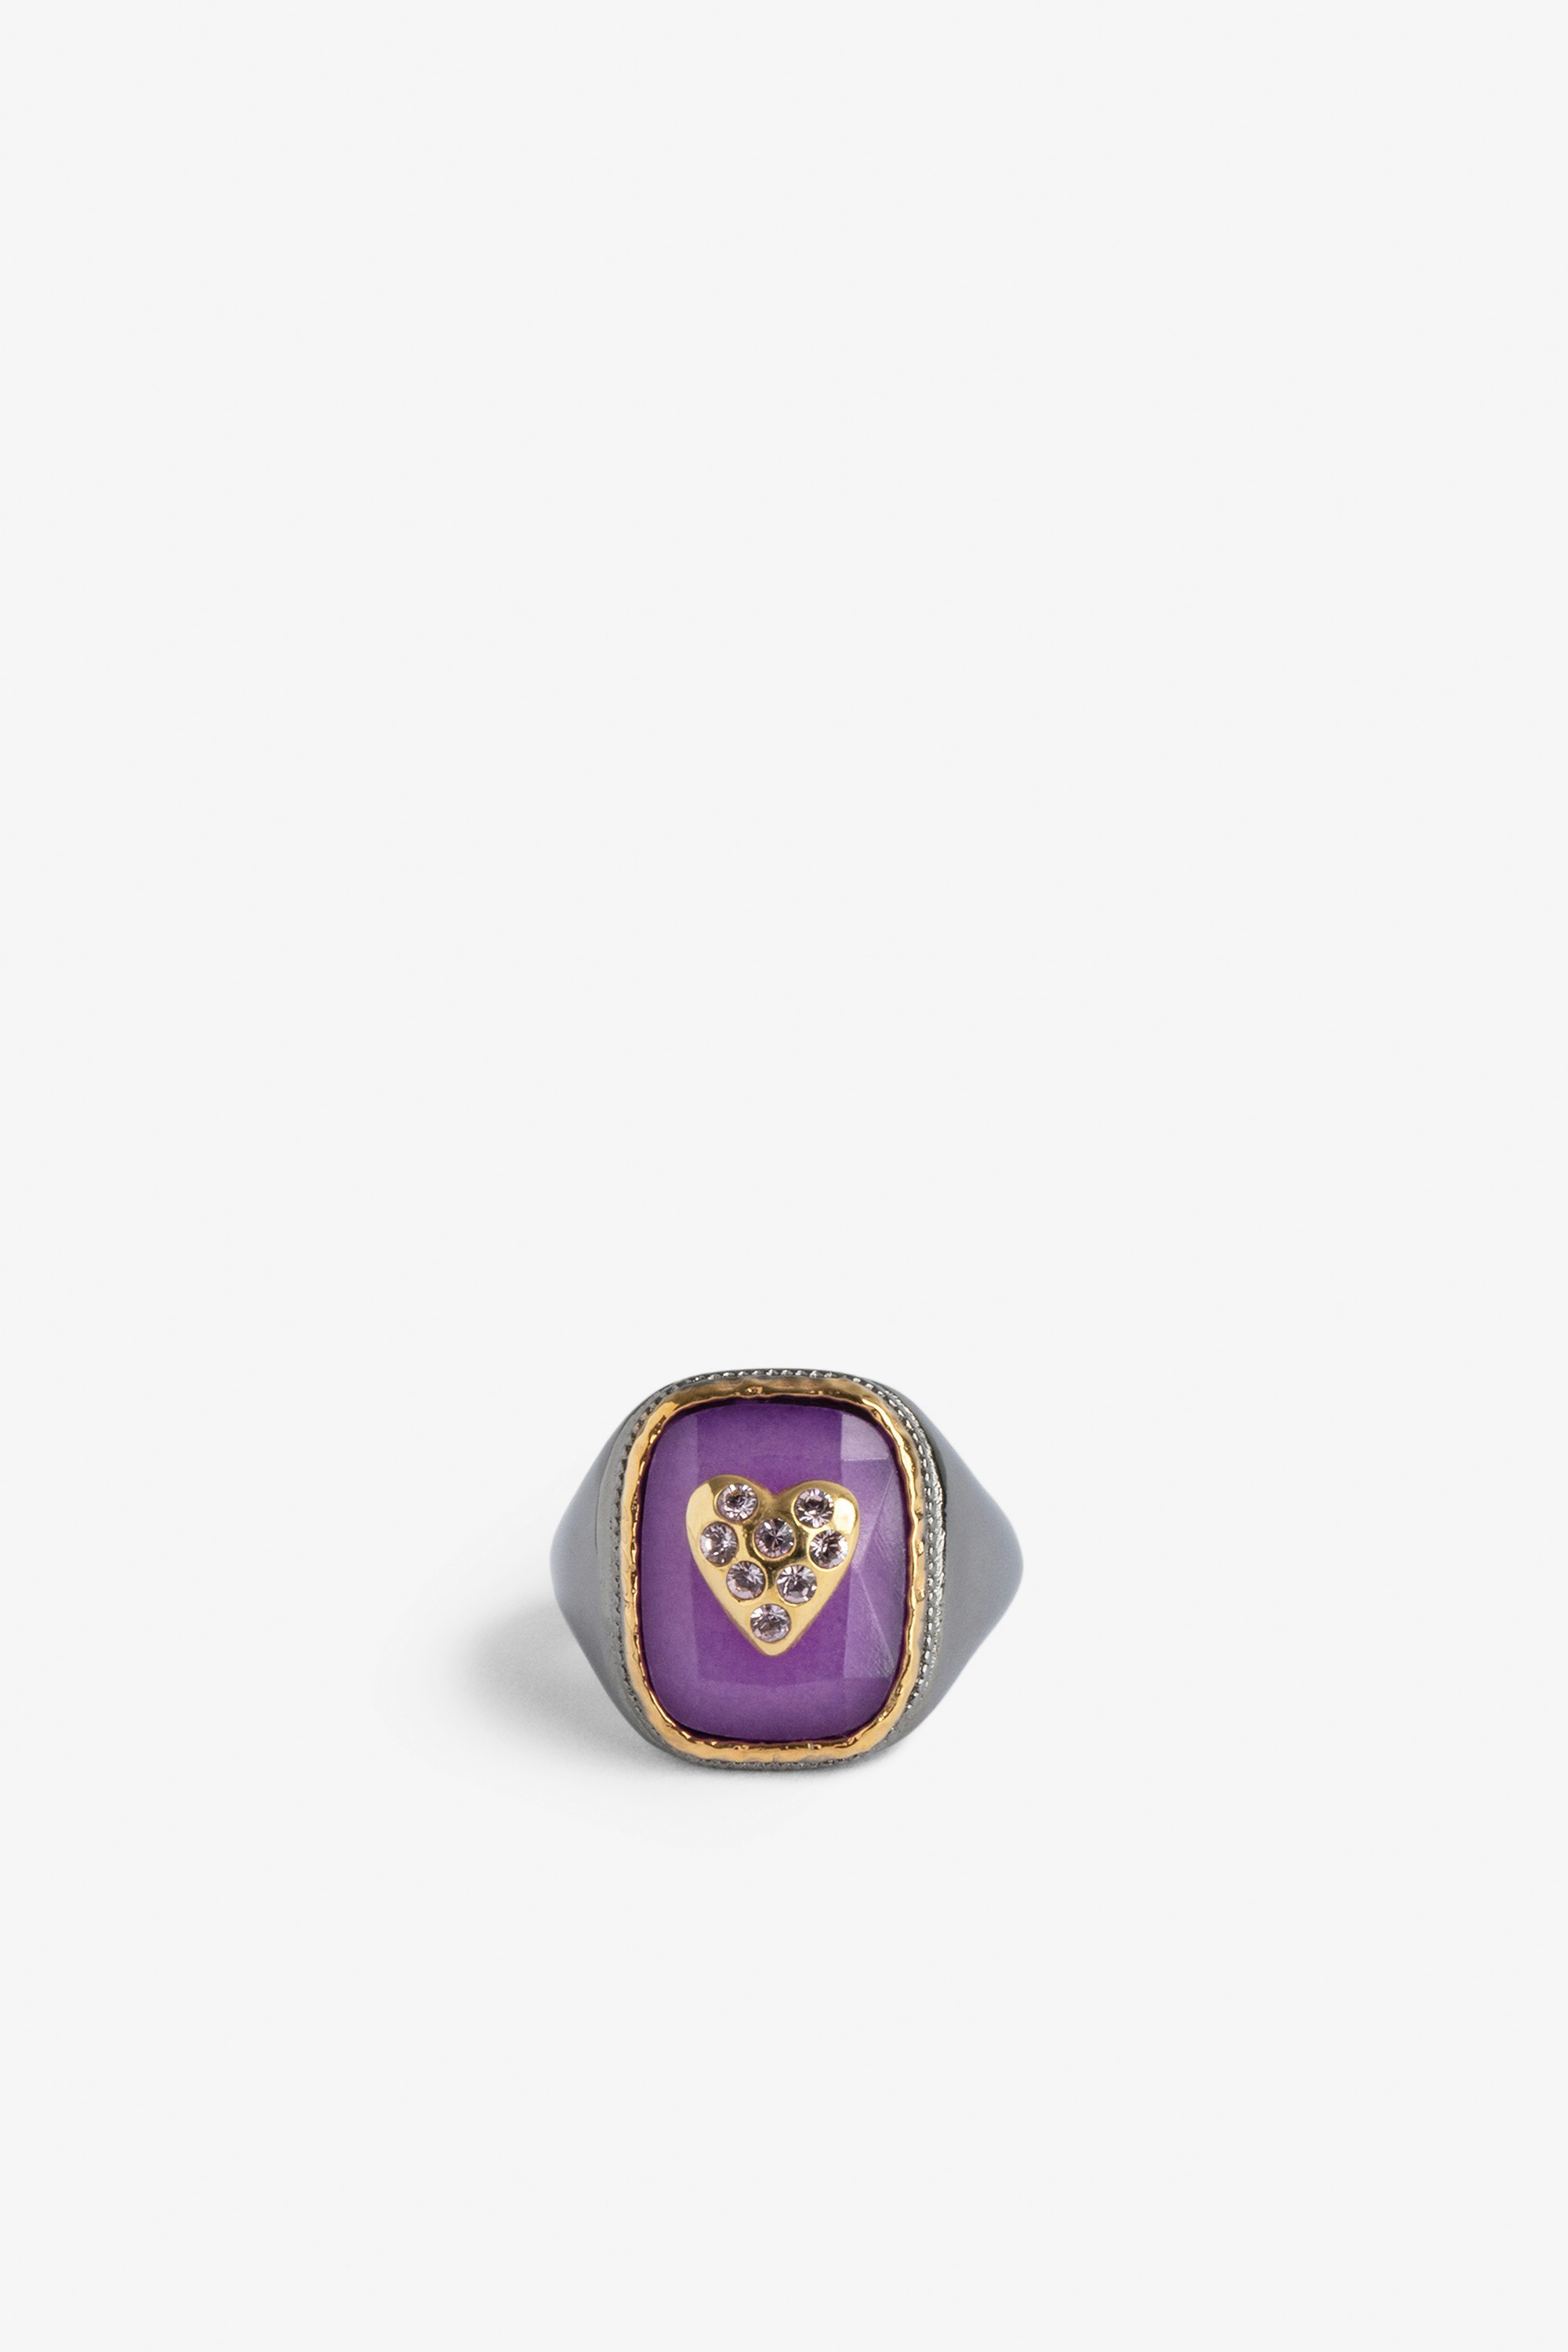 Anillo de sello Heart Anillo de sello con una piedra violeta engastada con un corazón de latón dorado